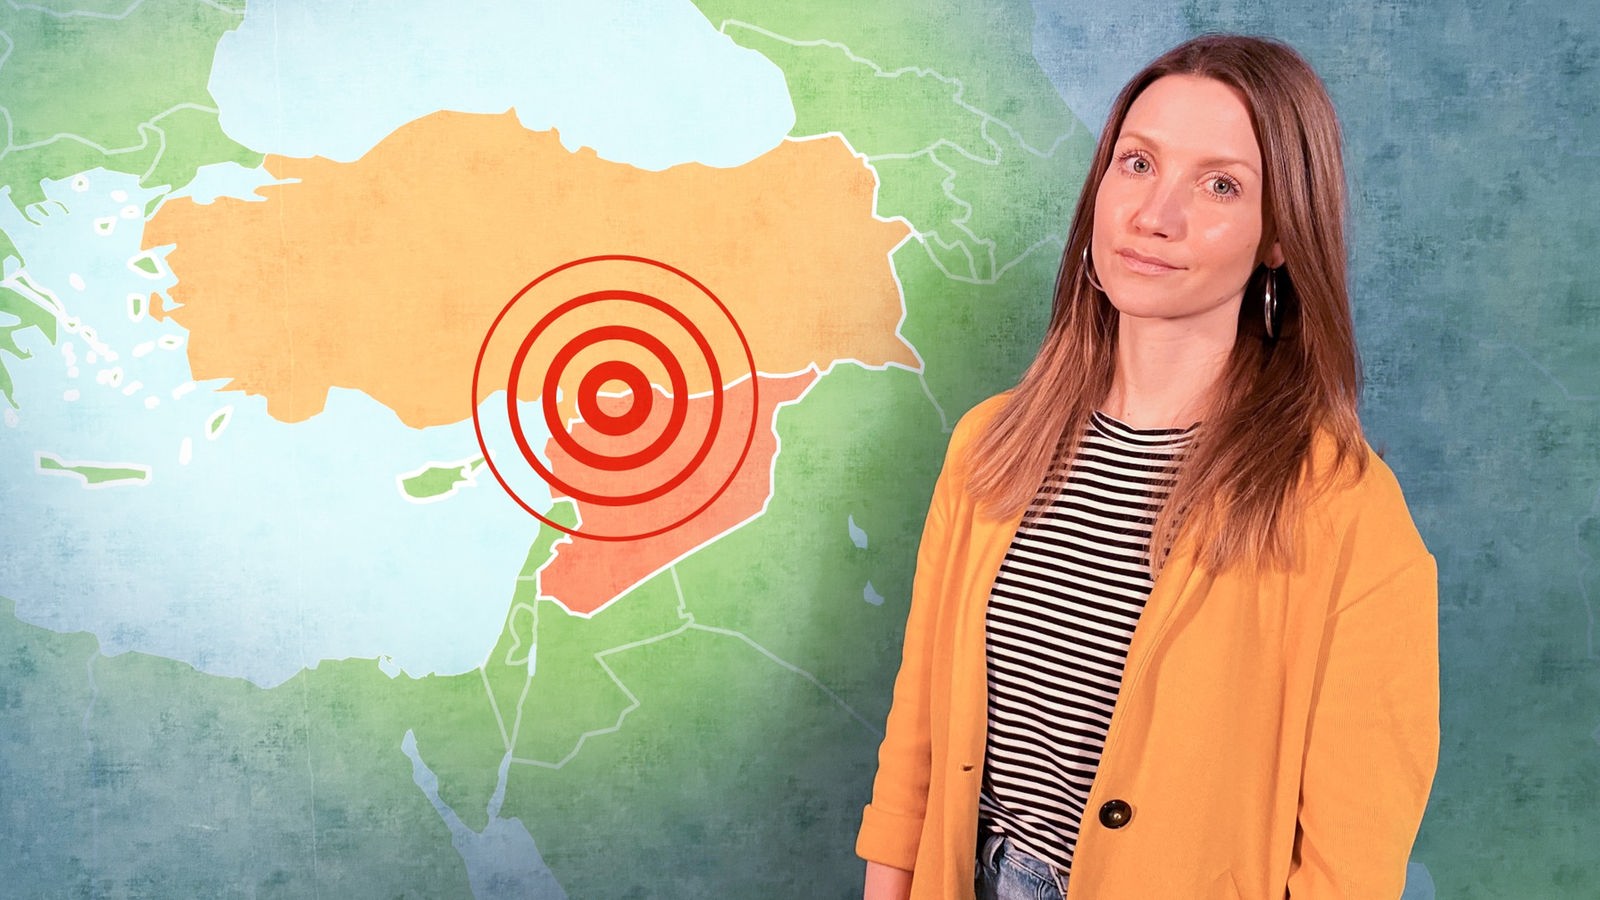 Jana steht vor einer Wand, auf der eine Karte von der Türkei und Syrien eingeblendet ist. Auf der Karte ist eingezeichnet, wo sich das Erdbeben am 06.02.2023 ereignet hat.